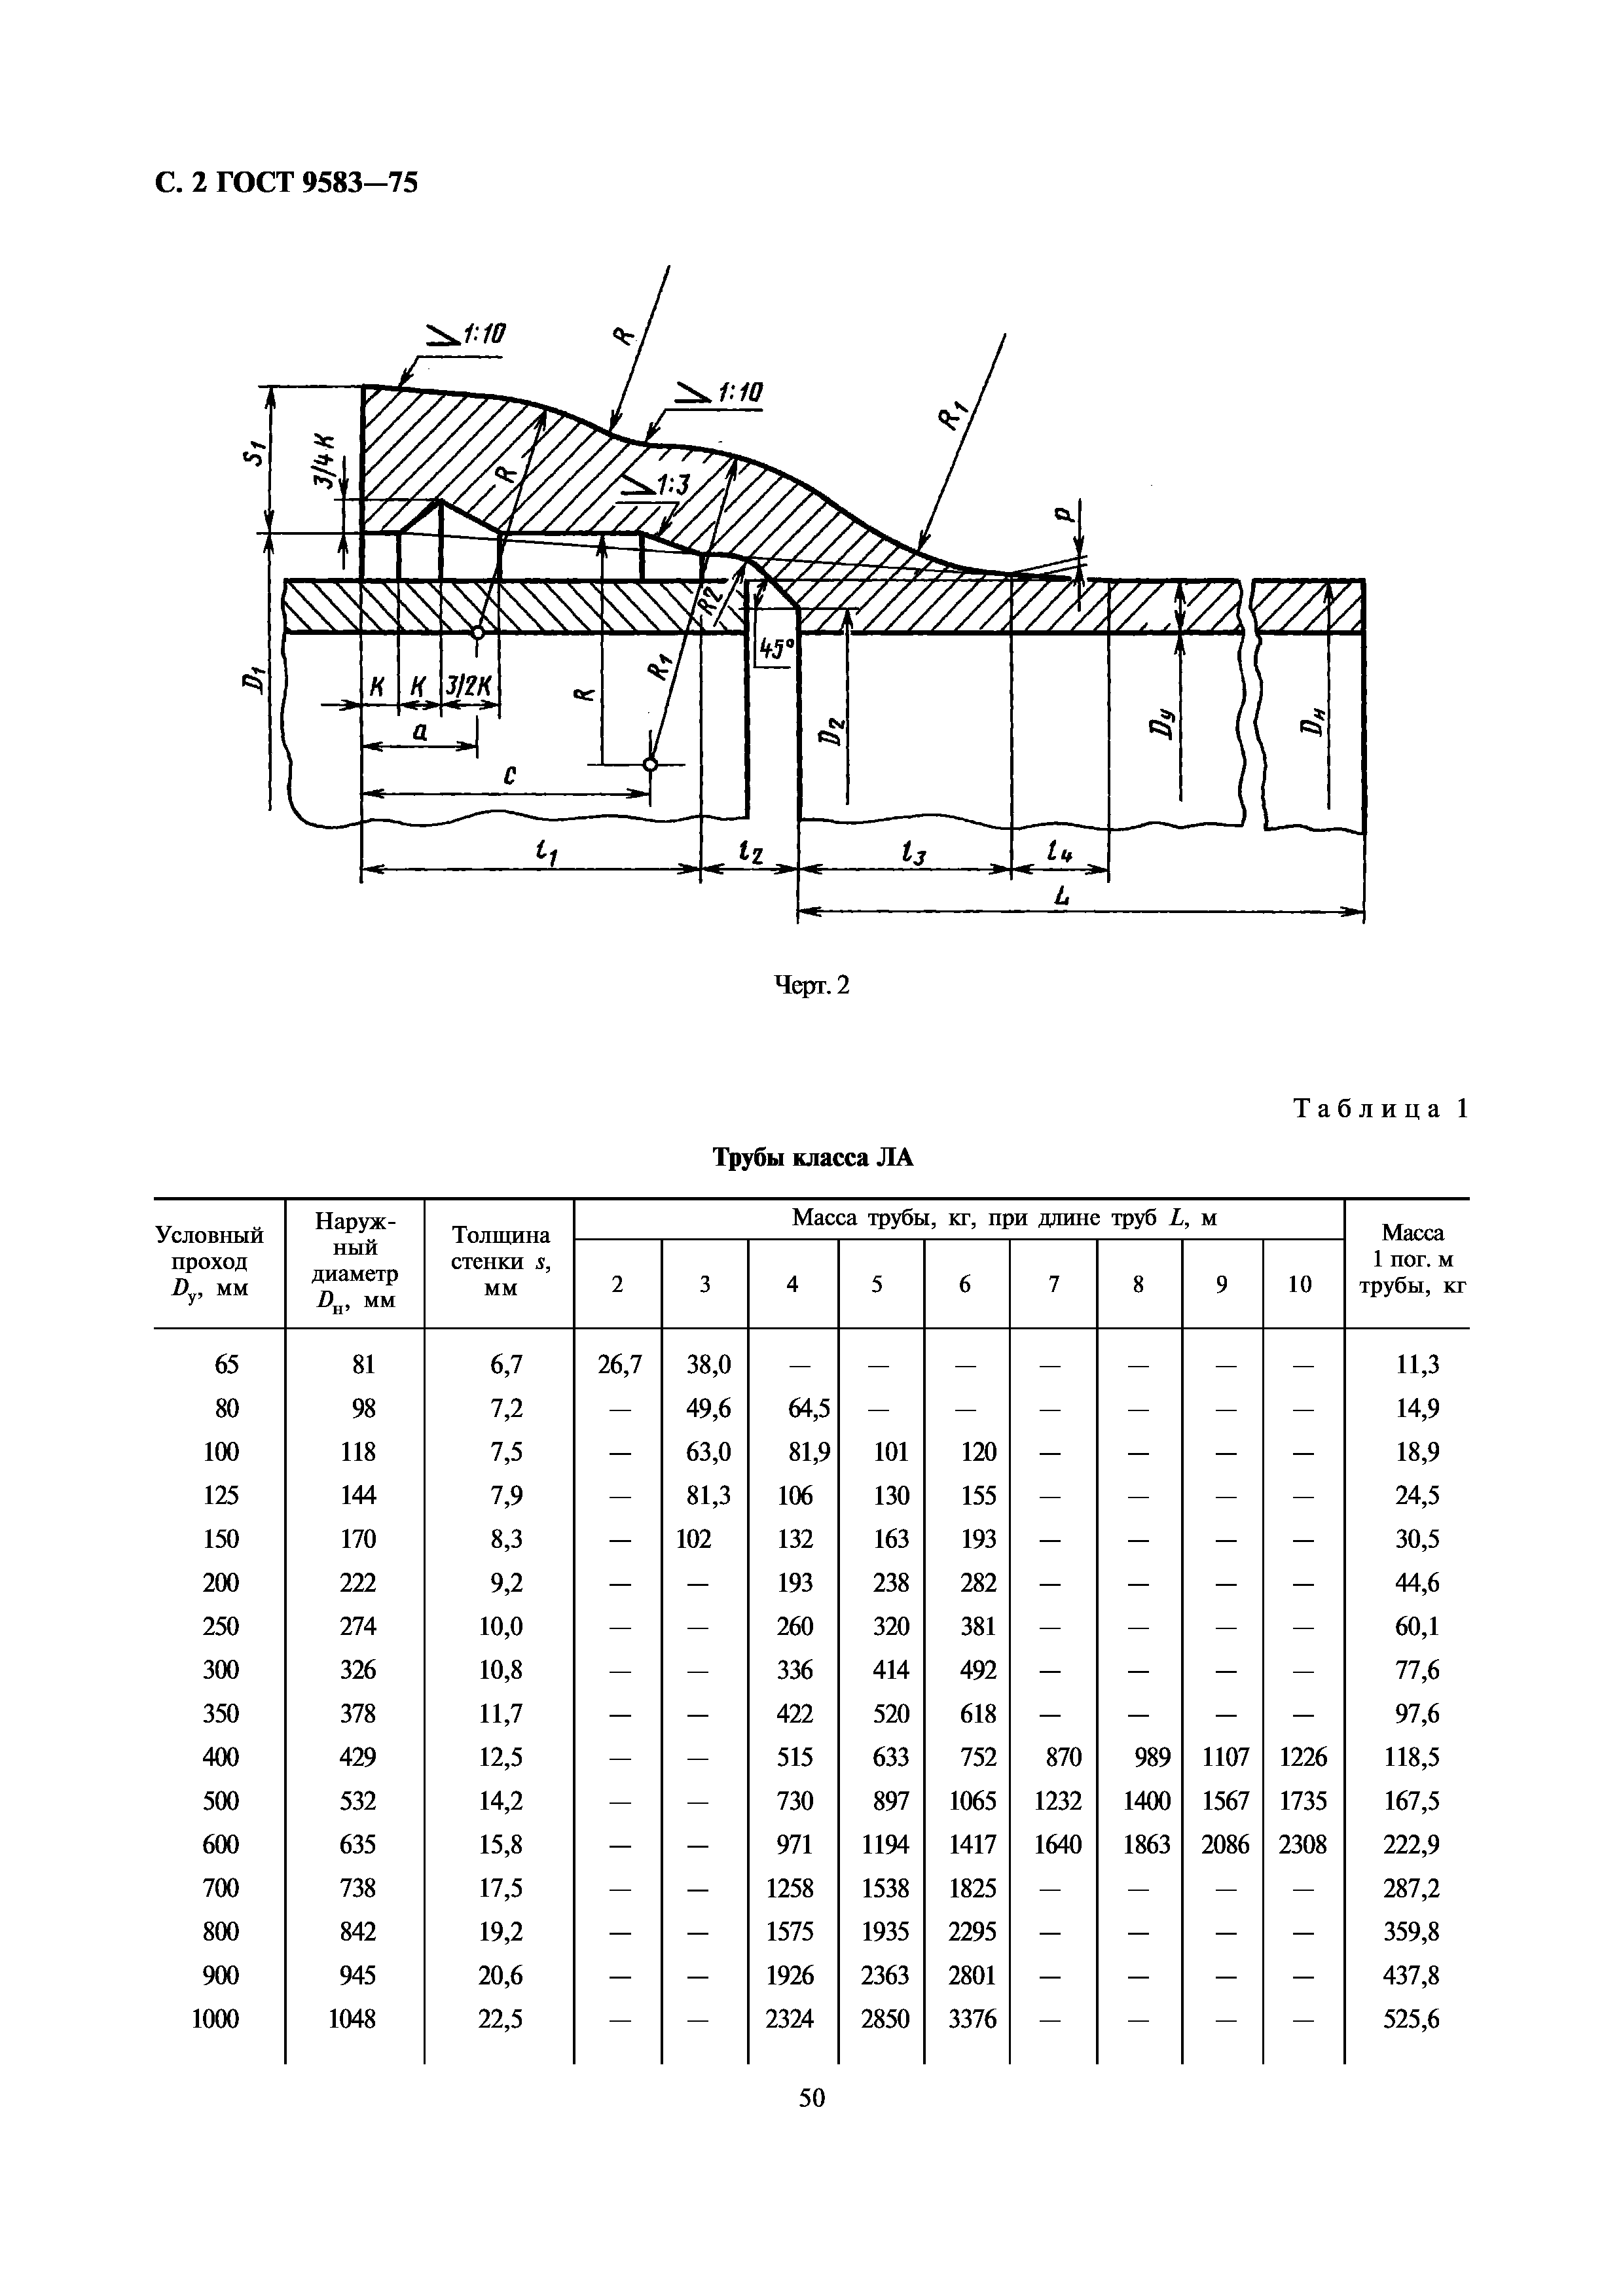 Чугунная труба ТЧК 500x14,2 ГОСТ 9583-75